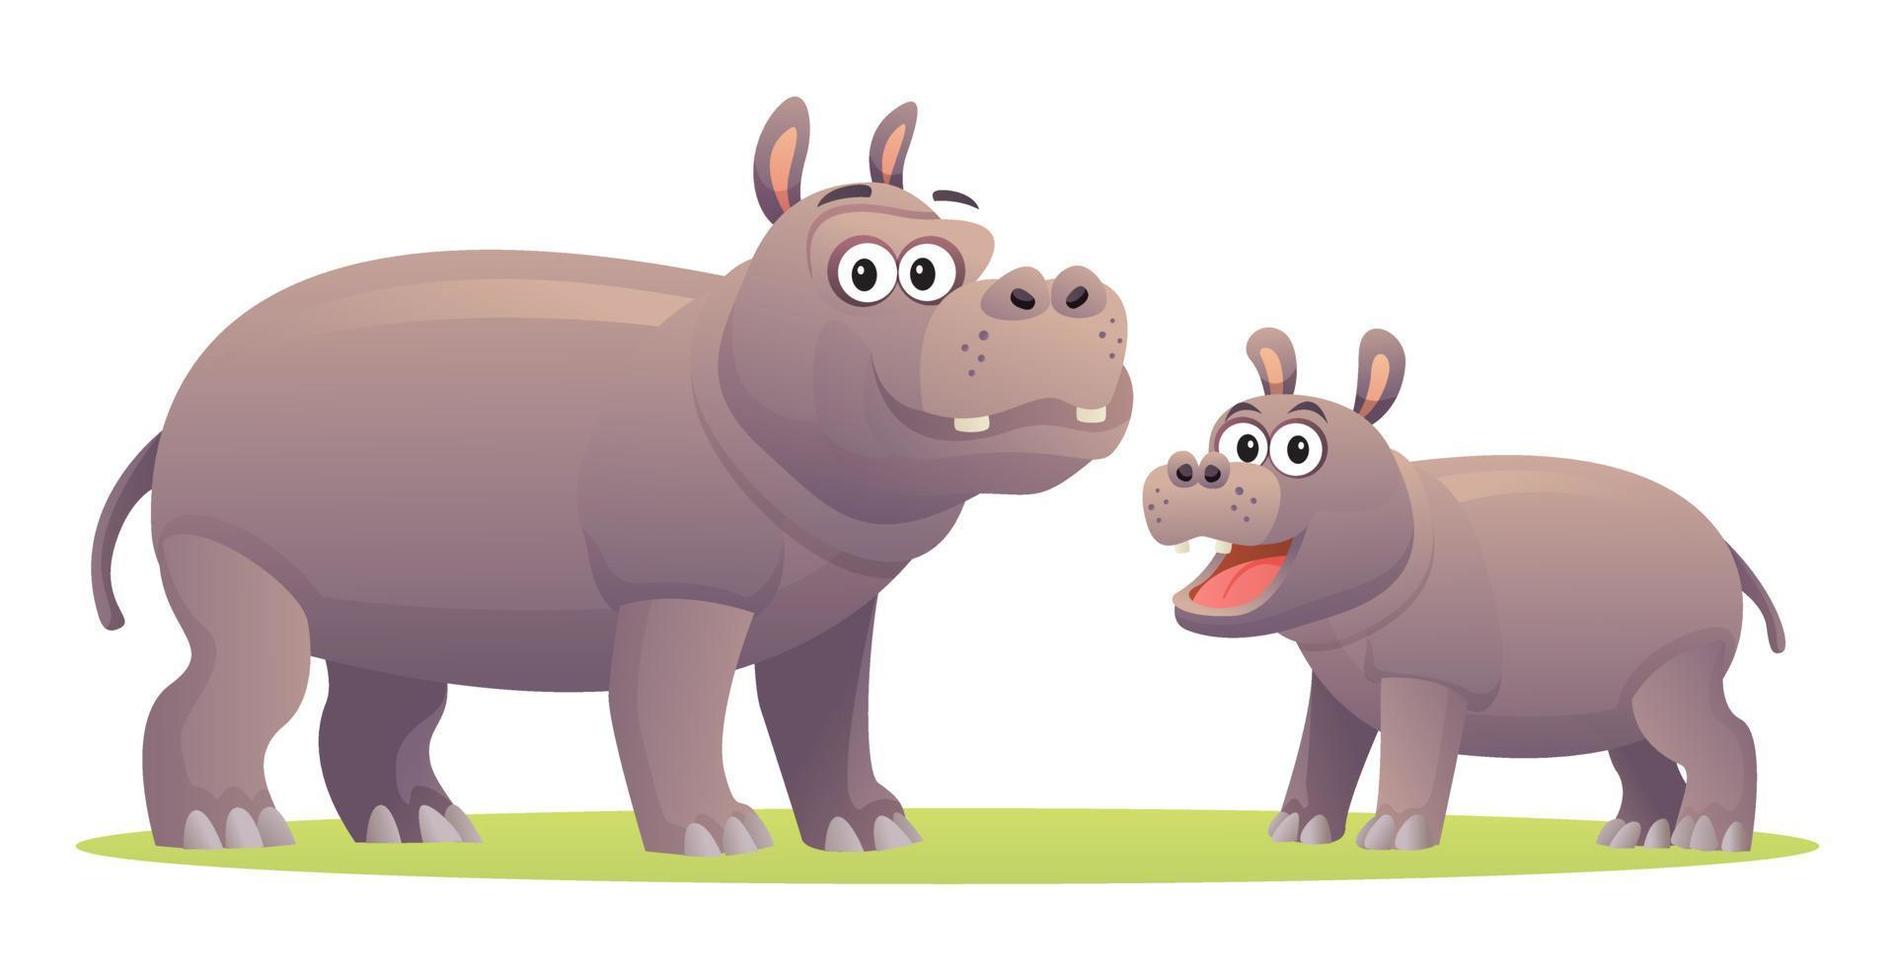 nijlpaard met schattige welp cartoon afbeelding vector